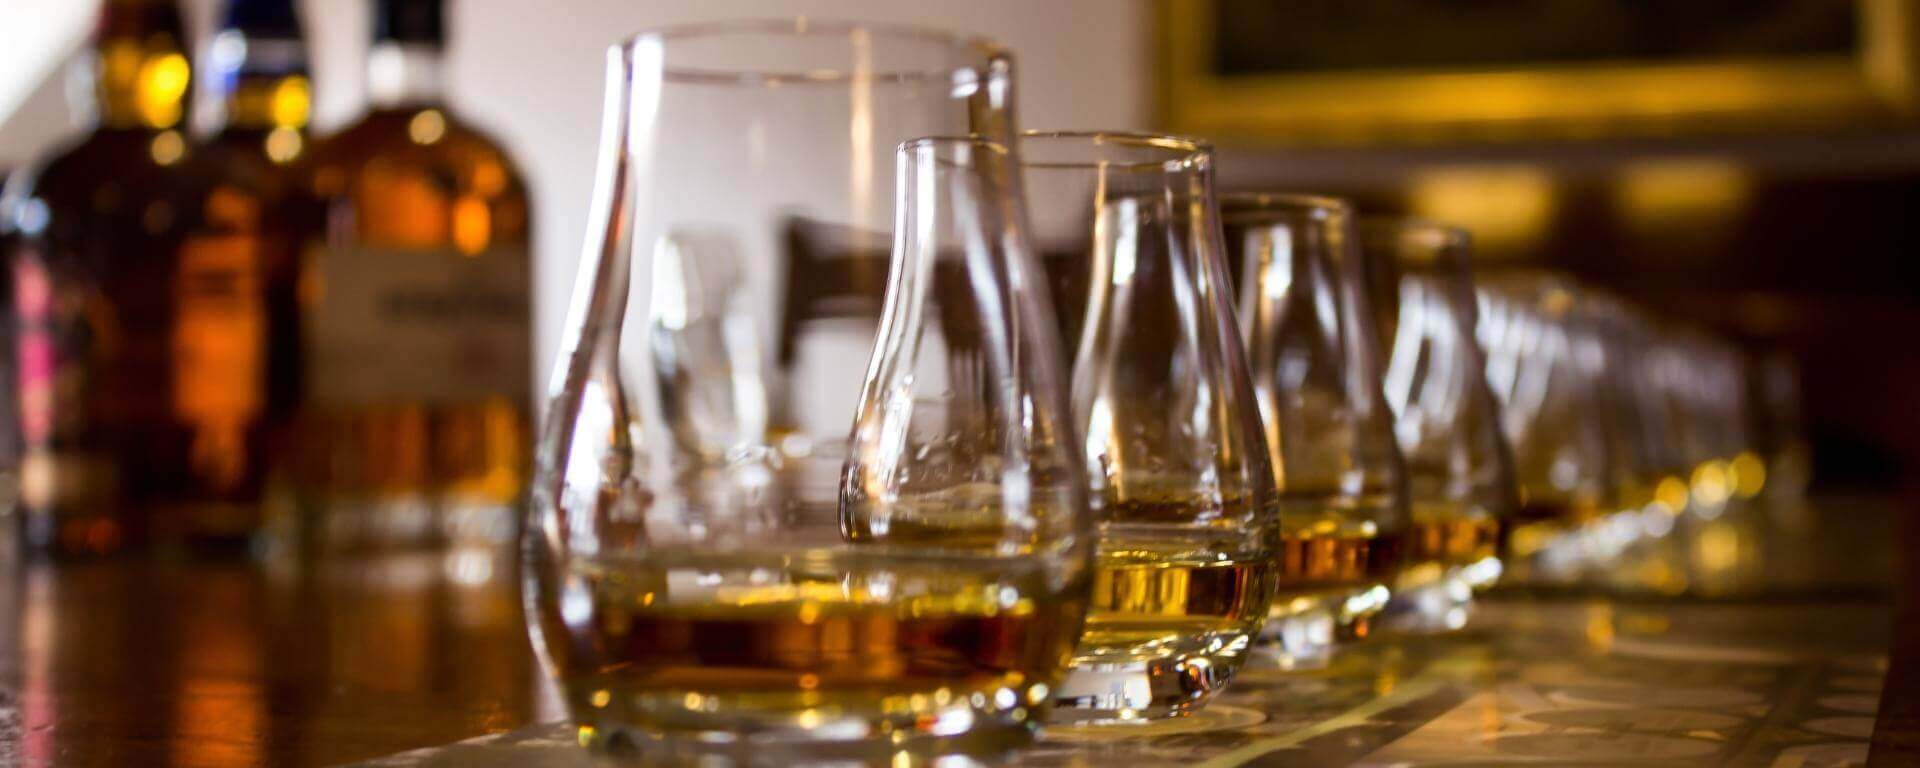 Whisky glasses and bottles set for tasting.